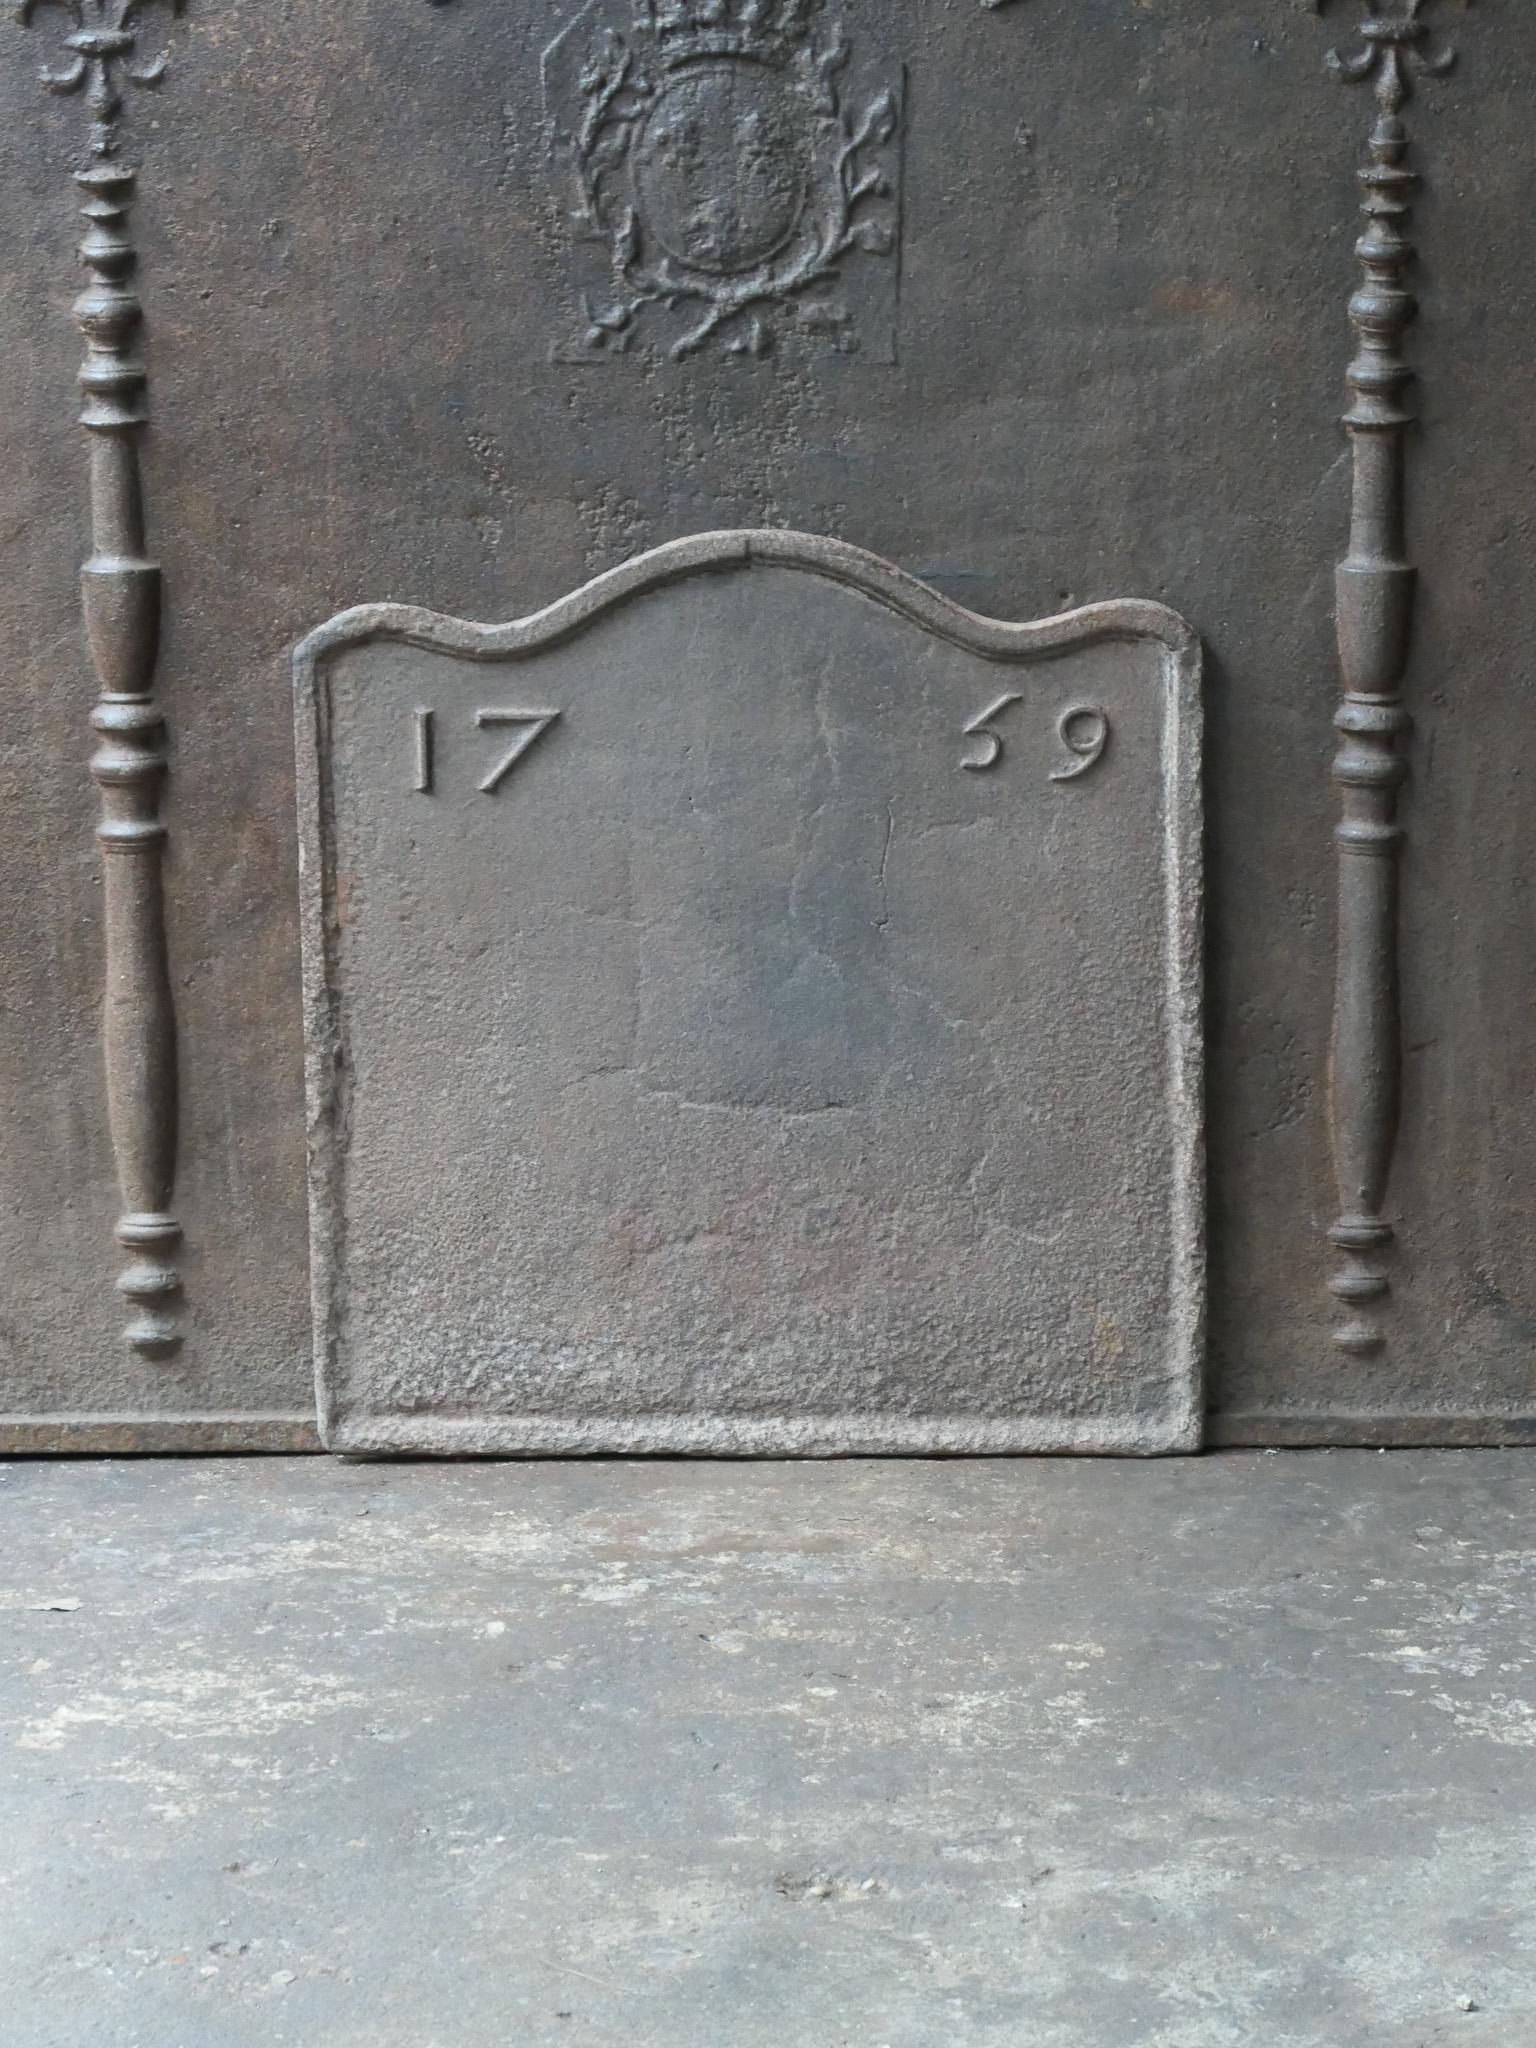 Plaque de cheminée d'époque Louis XV du 18e siècle. La date de production, 1759, est gravée dans la plaque de cheminée.

La plaque de cheminée présente une patine naturelle brune. Sur demande, il peut être fabriqué en noir ou en étain sans frais